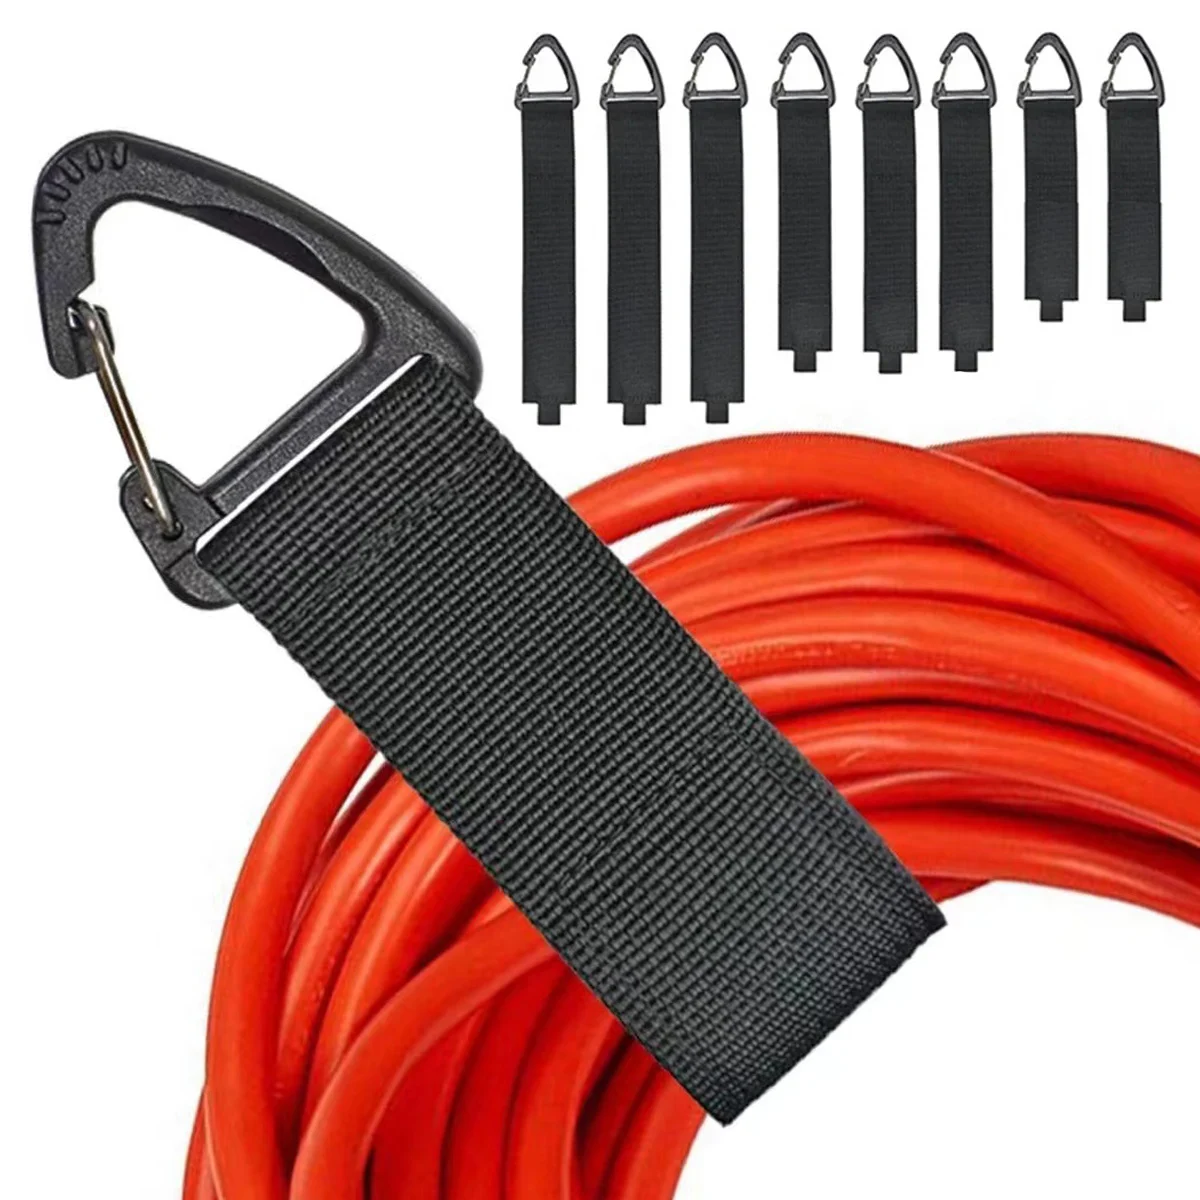 

Удлинительный шнур, держатель для гаражной организации и хранения, сверхпрочные ремни для хранения кабелей, шлангов и канатов